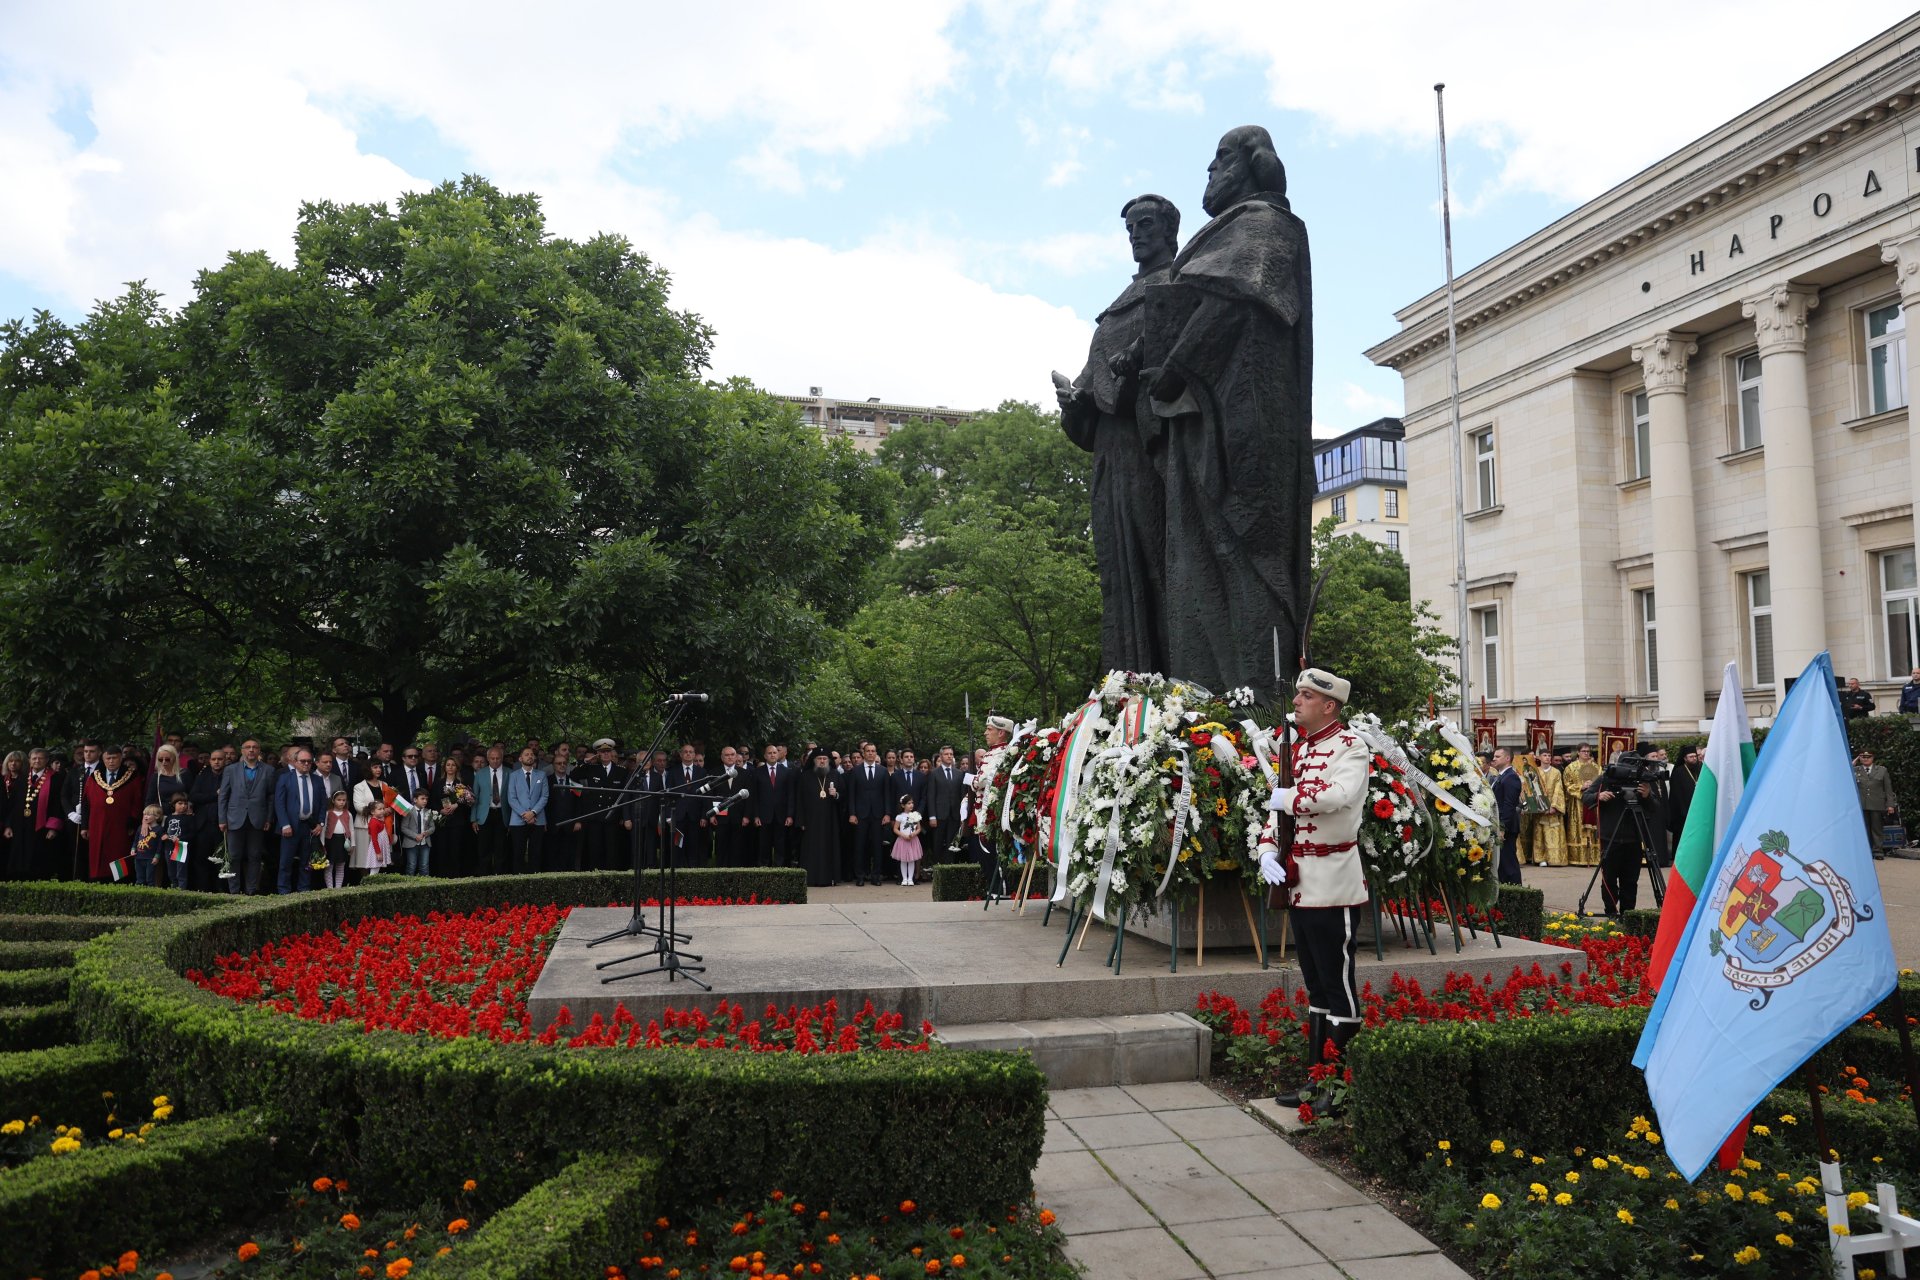  Пред паметника на Св. св. Кирил и Методий се поднасят венци и цветя